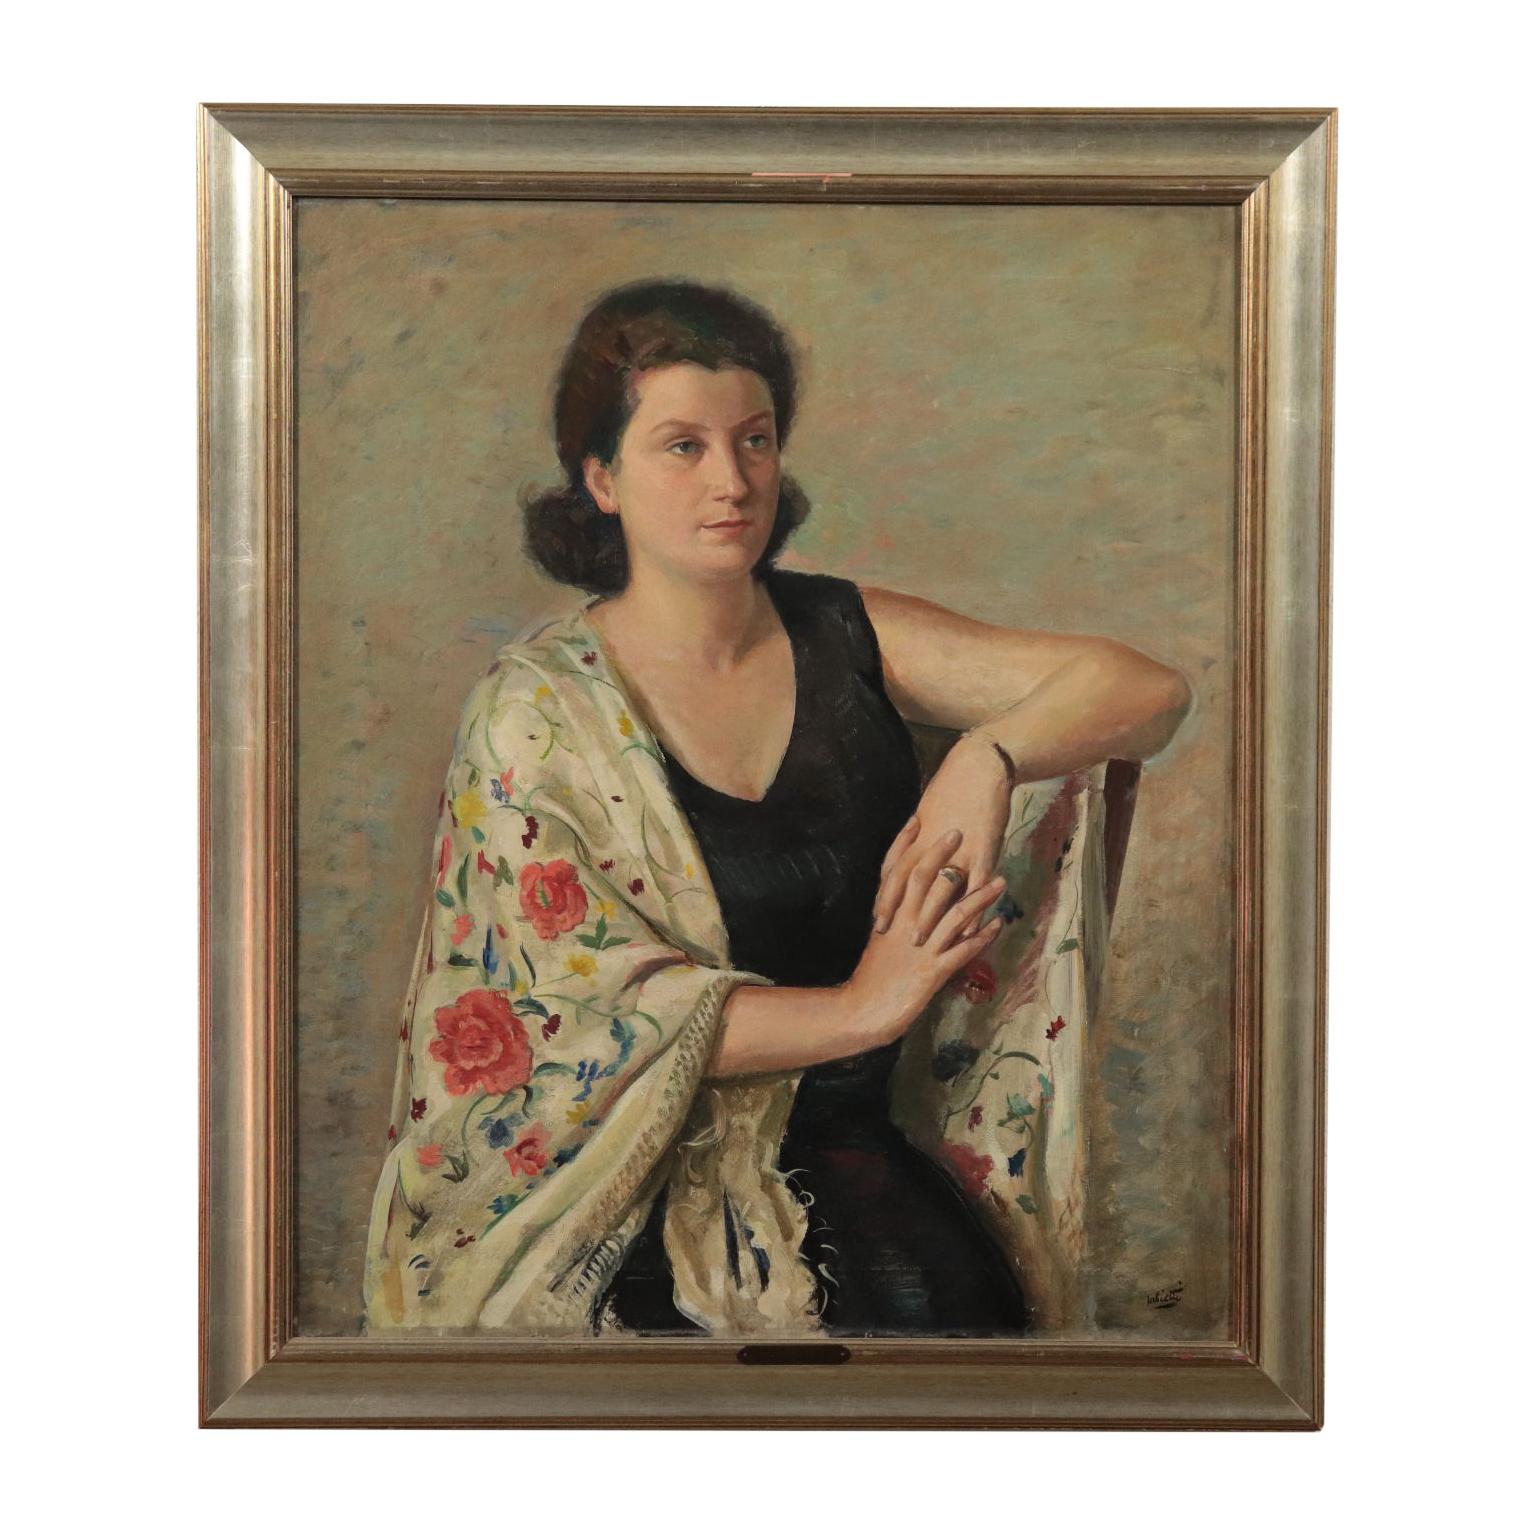 1940s portrait painting